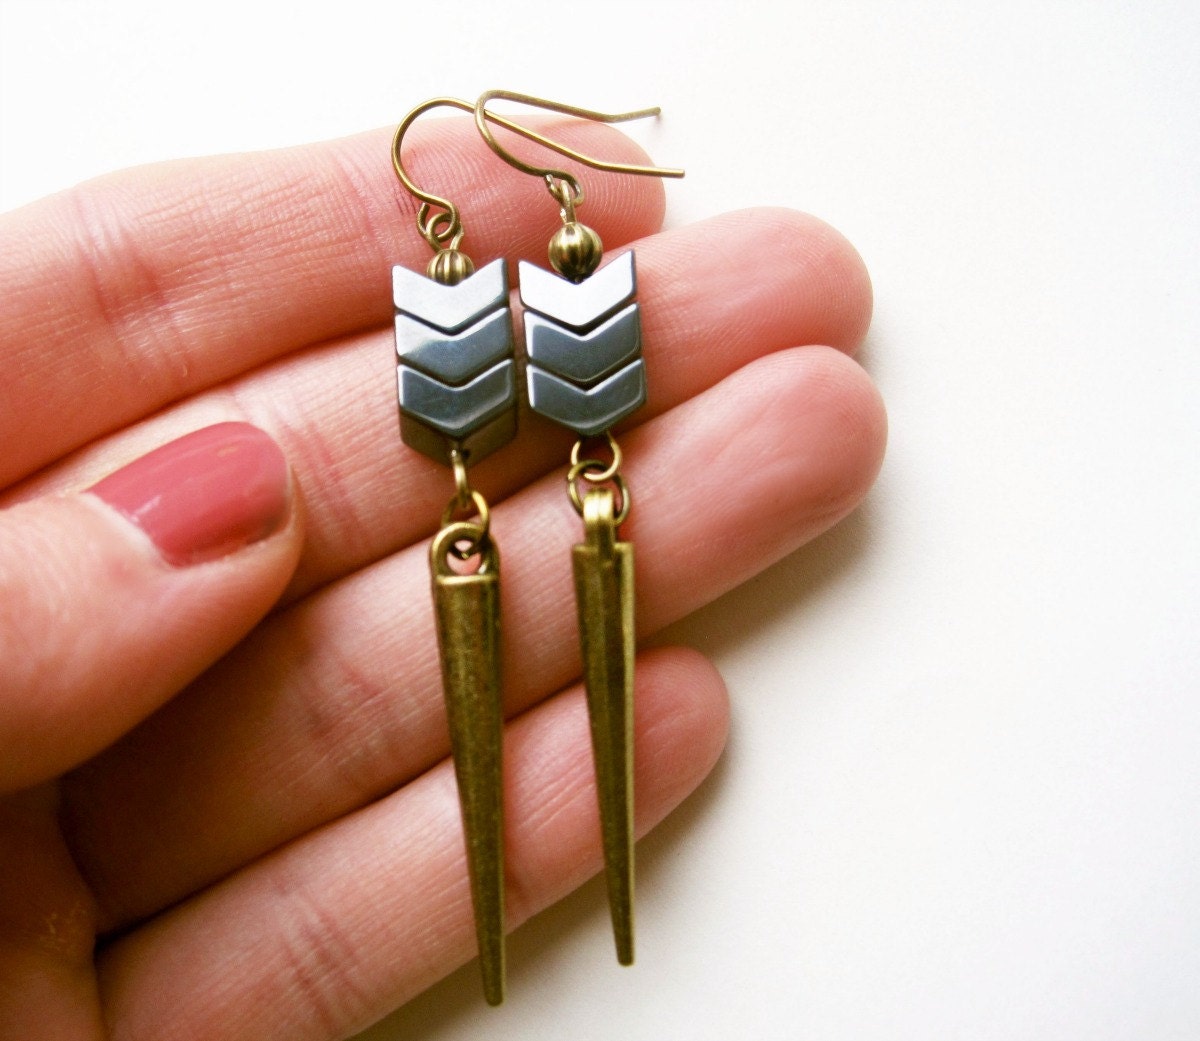 Chevron Hematite Earrings, Metallic Arrow Earrings, Antique Bronze Dagger Earrings, Geometric Jewelry. Grey Spike Earrings, Unique Jewelry